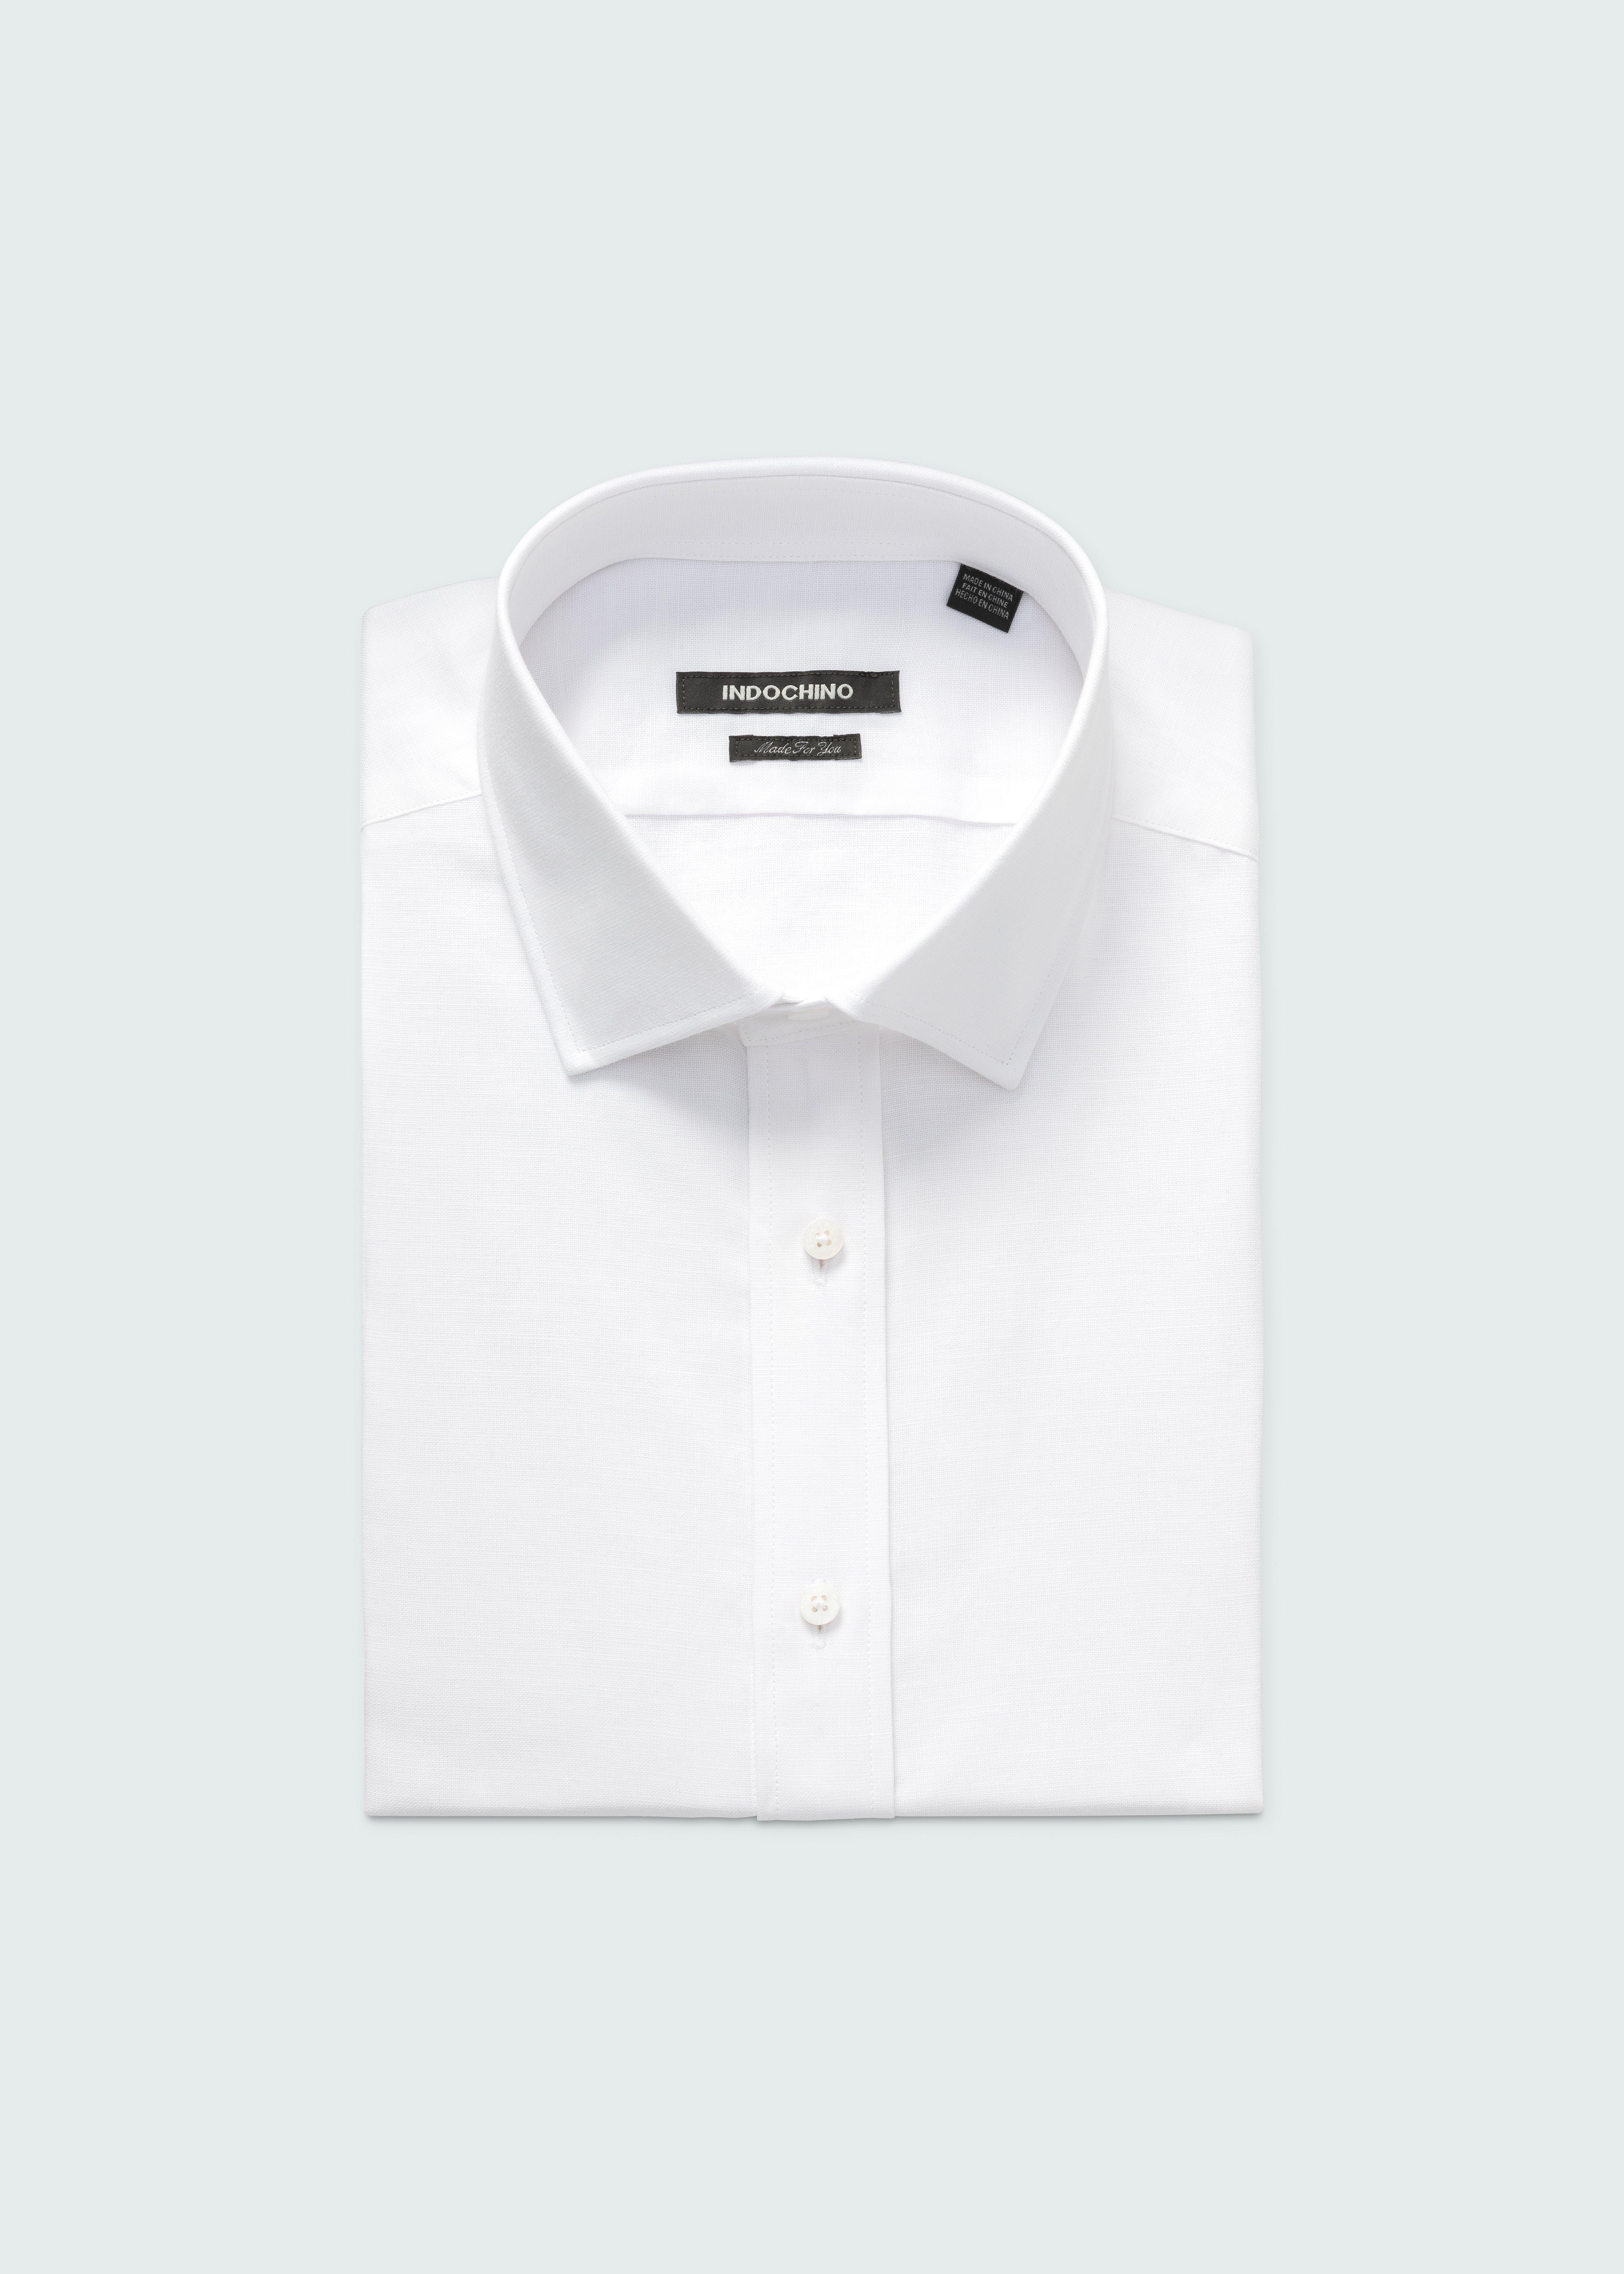 Men's Dress Shirts - Sudbury Cotton Linen White Shirt | INDOCHINO